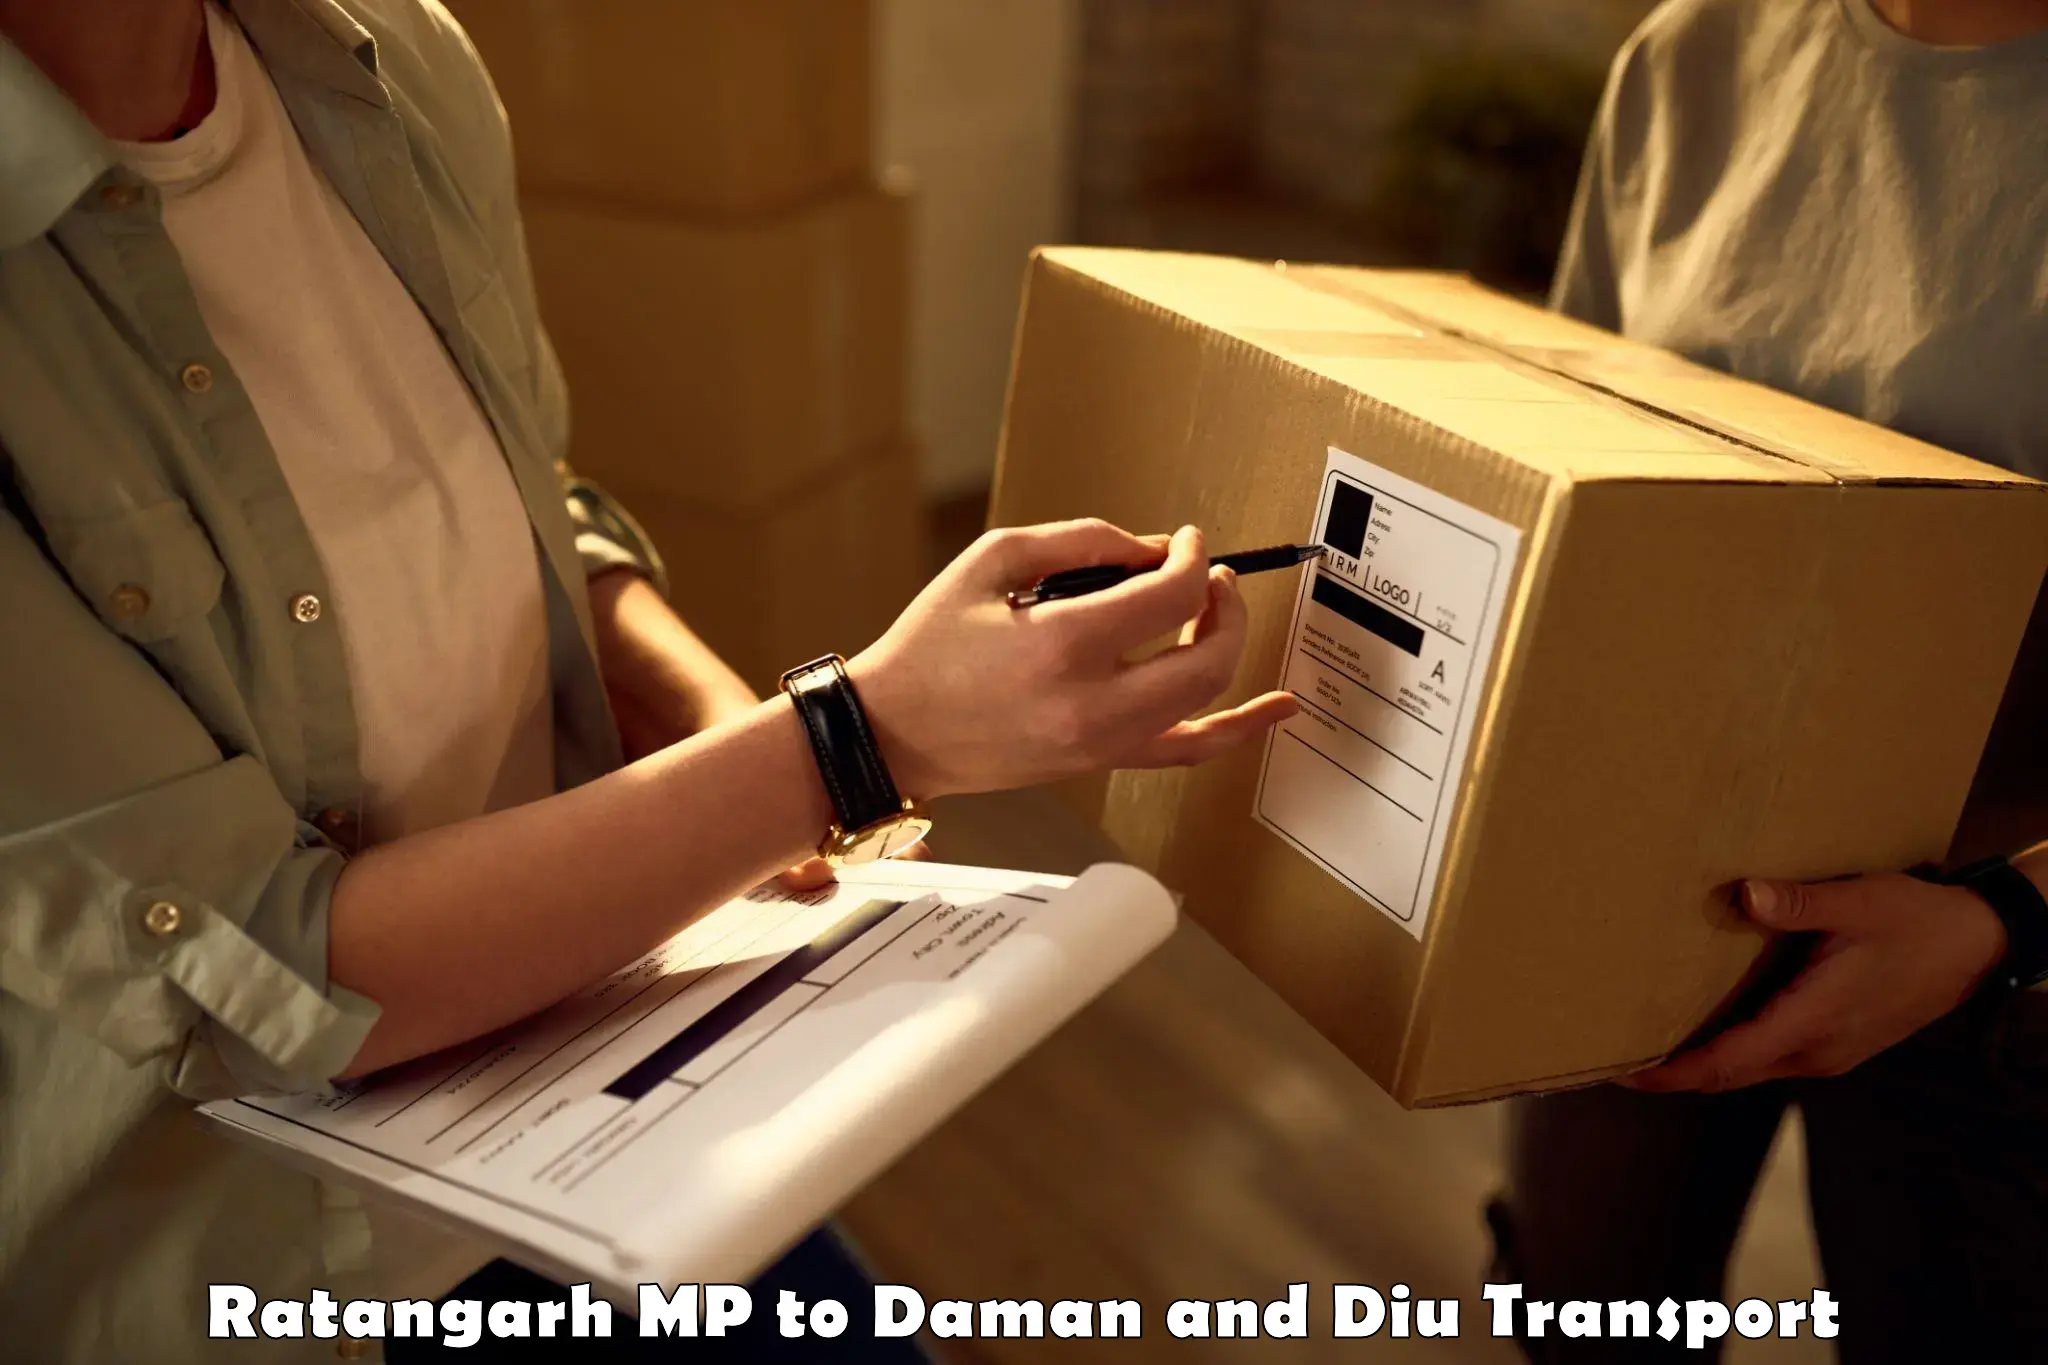 Furniture transport service Ratangarh MP to Daman and Diu